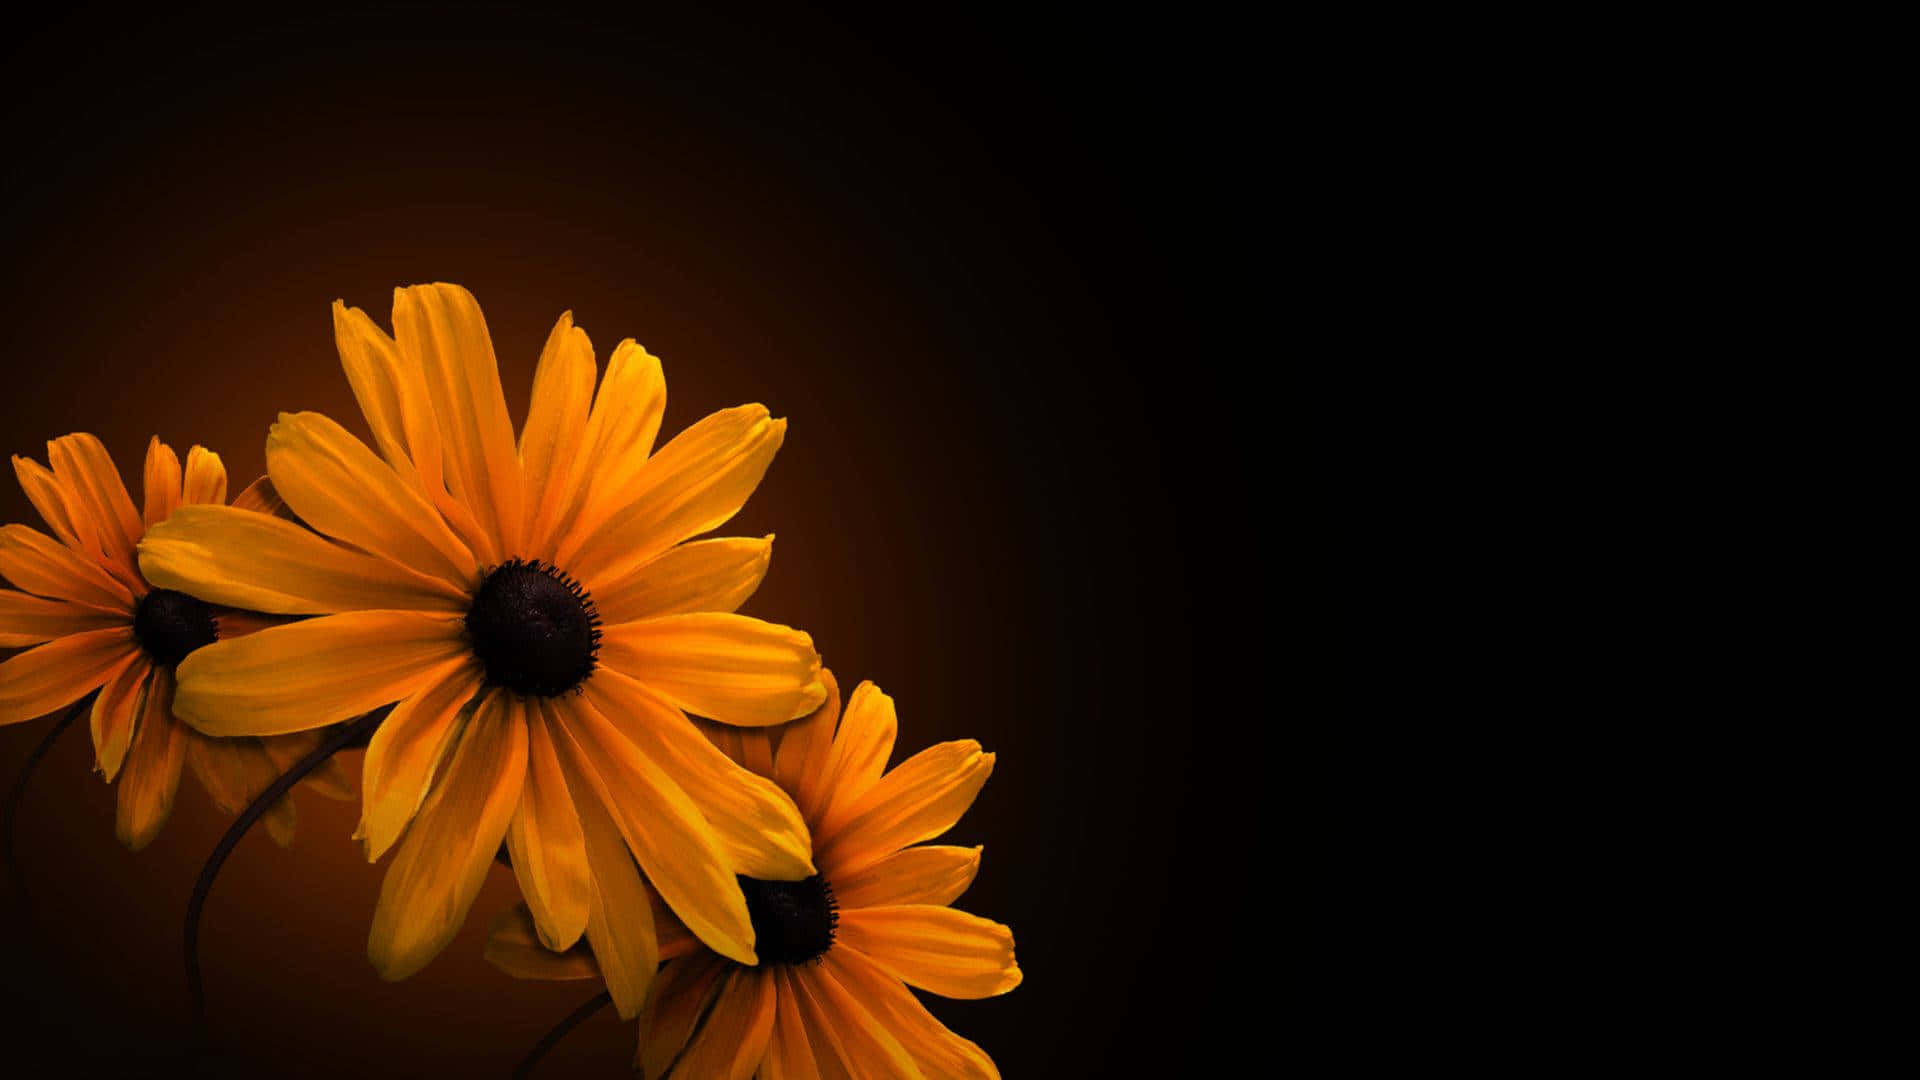 Einschwarzer Hintergrund Mit Gelben Blumen Darauf. Wallpaper